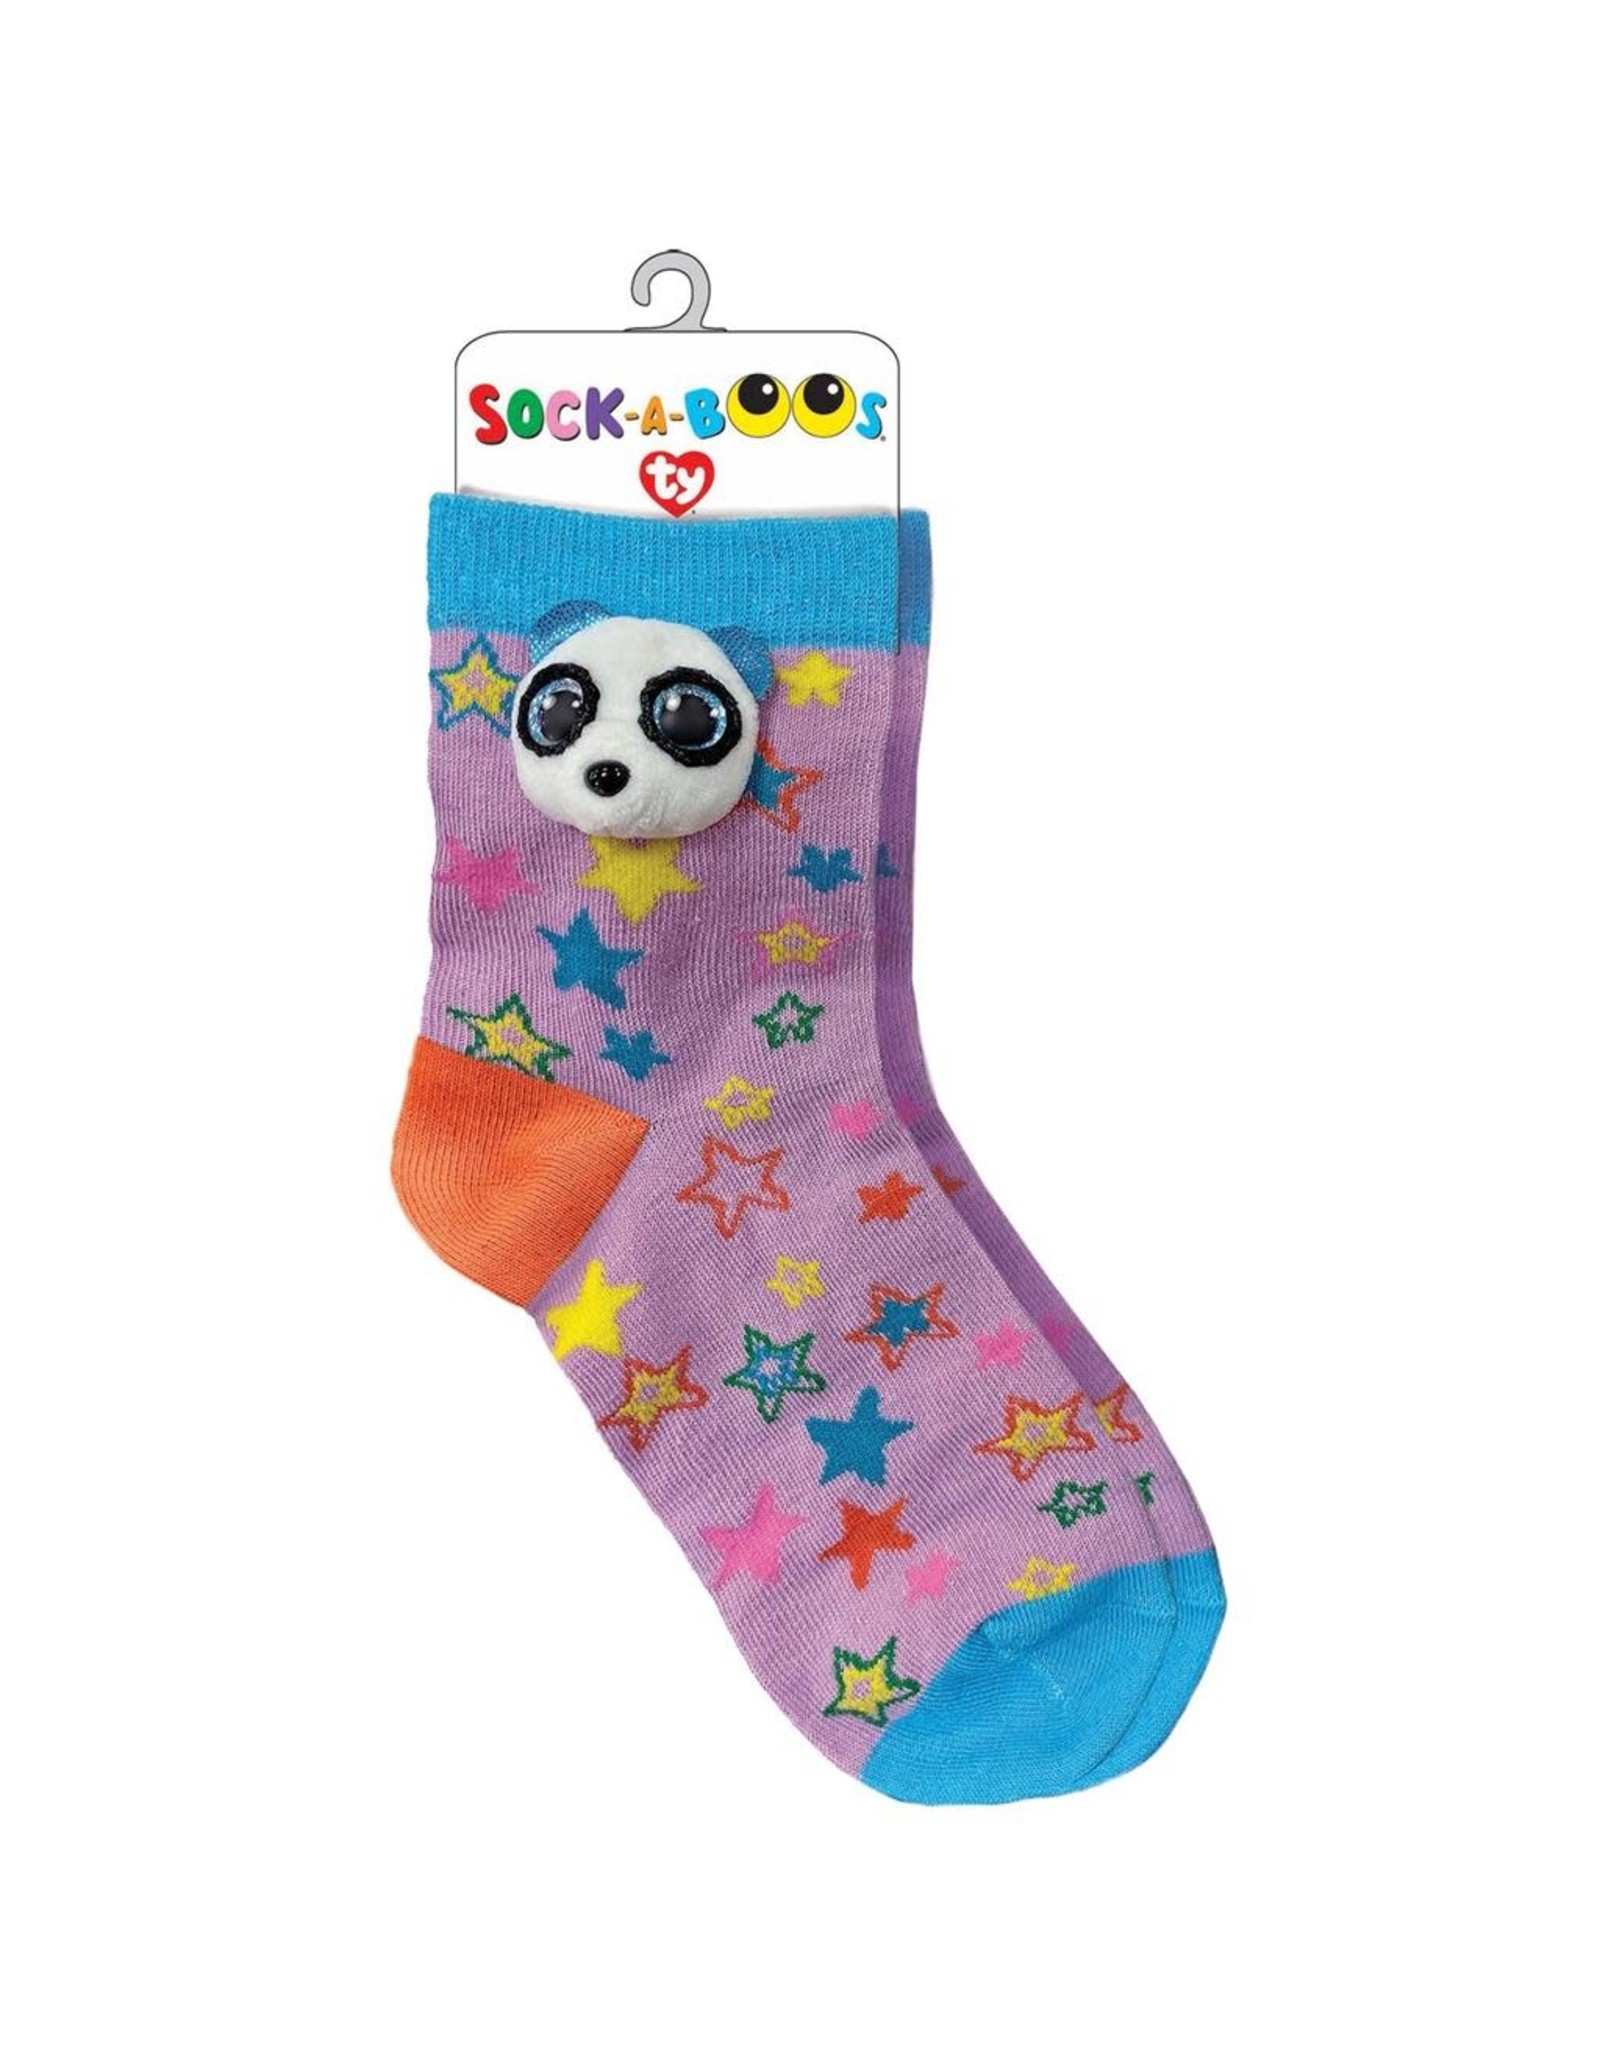 Ty Ty Fashion Sock-a-Boo's Bamboo de Panda, Roze/Blauw